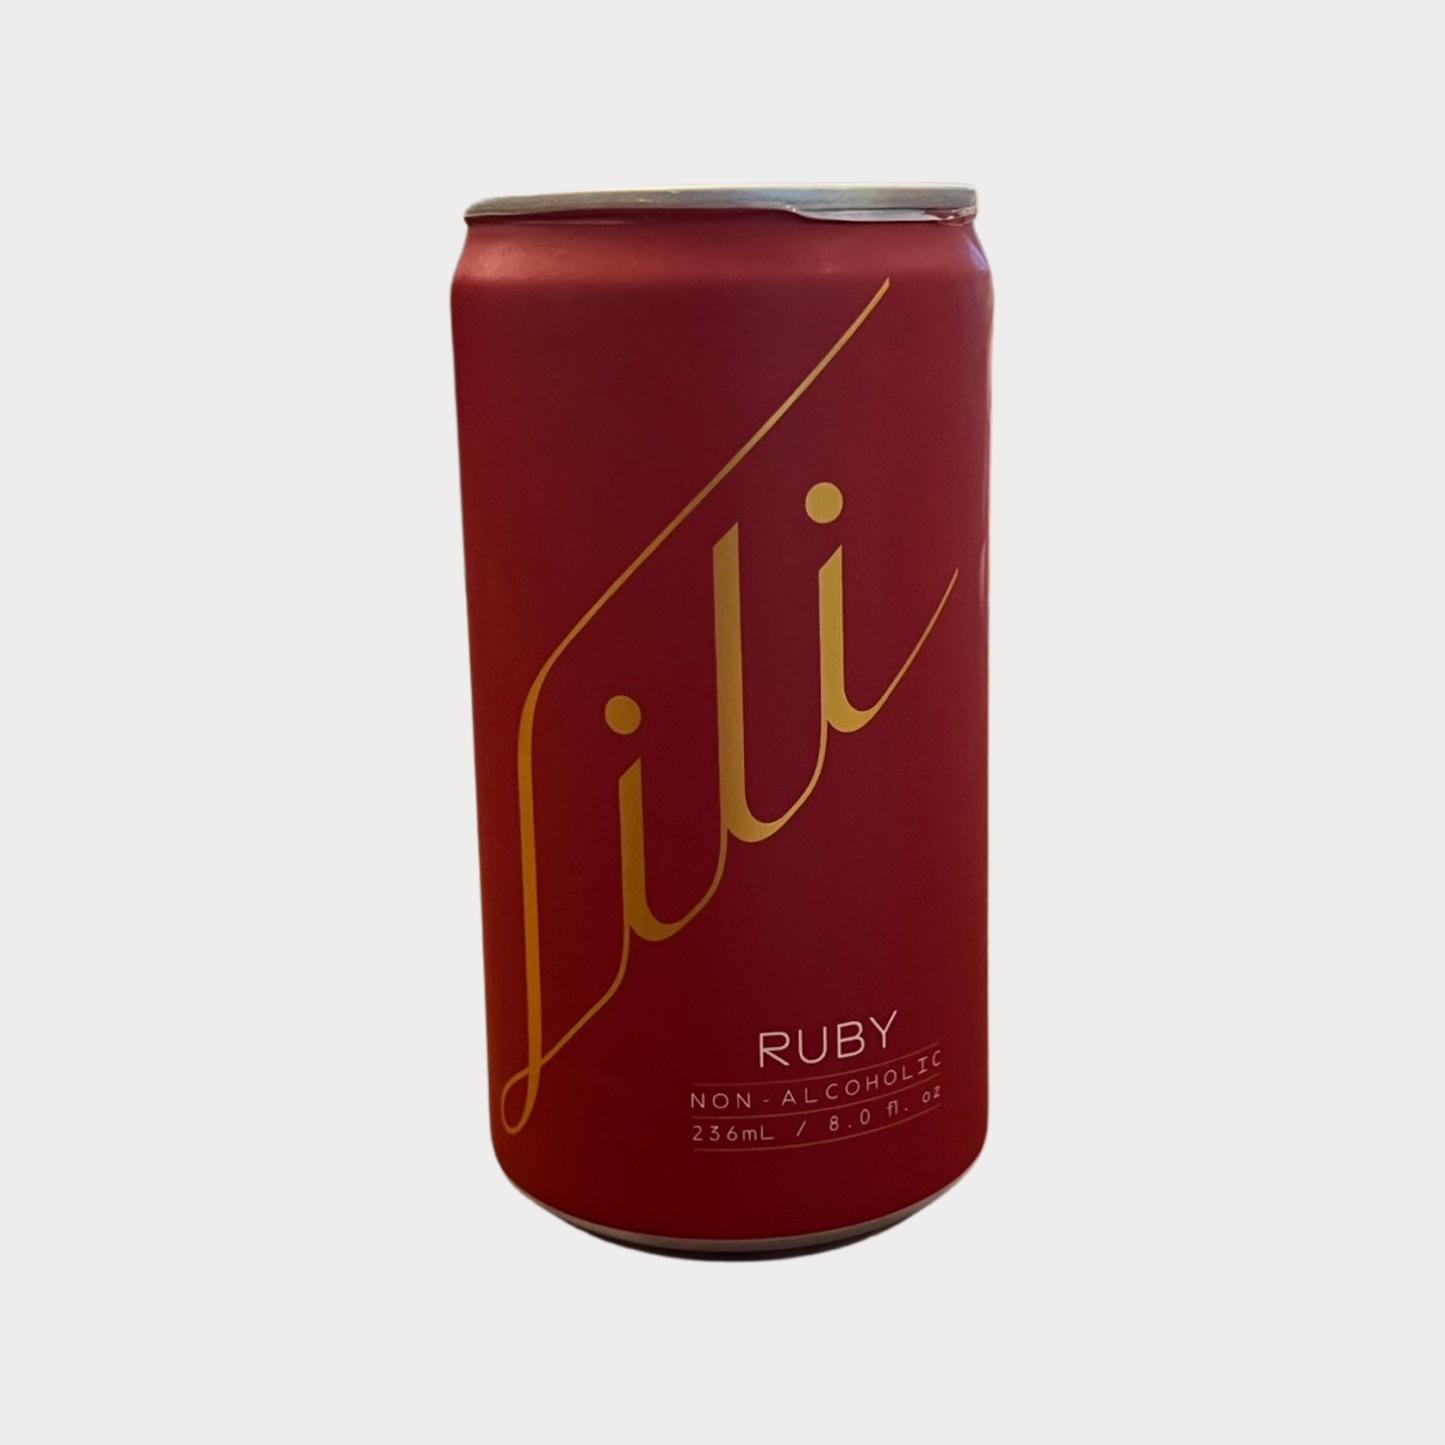 Lili Ruby Non-Alcoholic Wine